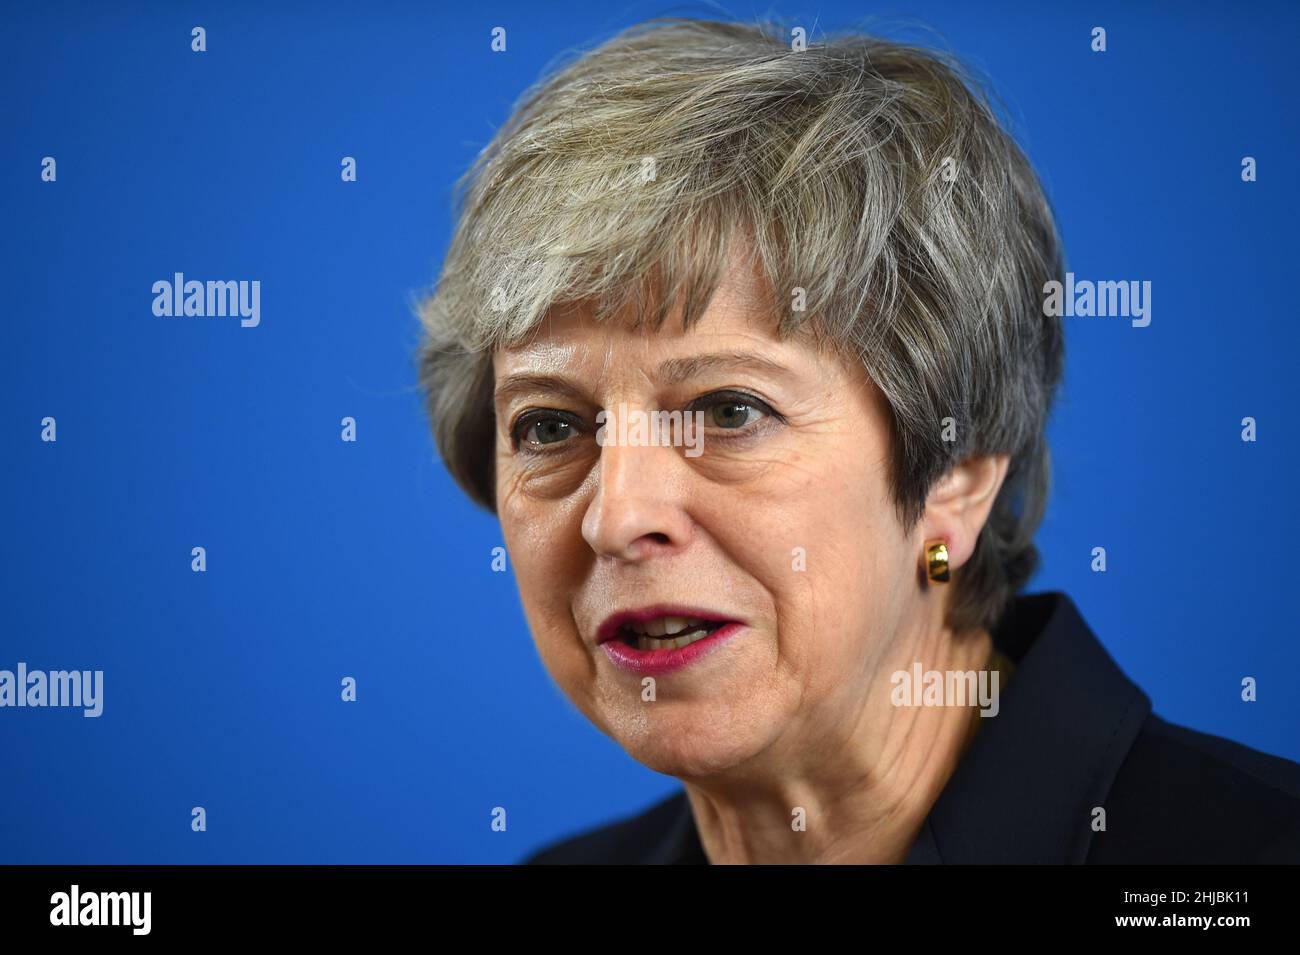 Aktenfoto vom 04/07/19 der ehemaligen Premierministerin Theresa May, die sagte, sie sei „wütend“ über die Anschuldigungen von Parteien, die während der Beschränkungen des Coronavirus in der Downing Street abgehalten wurden. Ausgabedatum: Freitag, 28. Januar 2022. Stockfoto